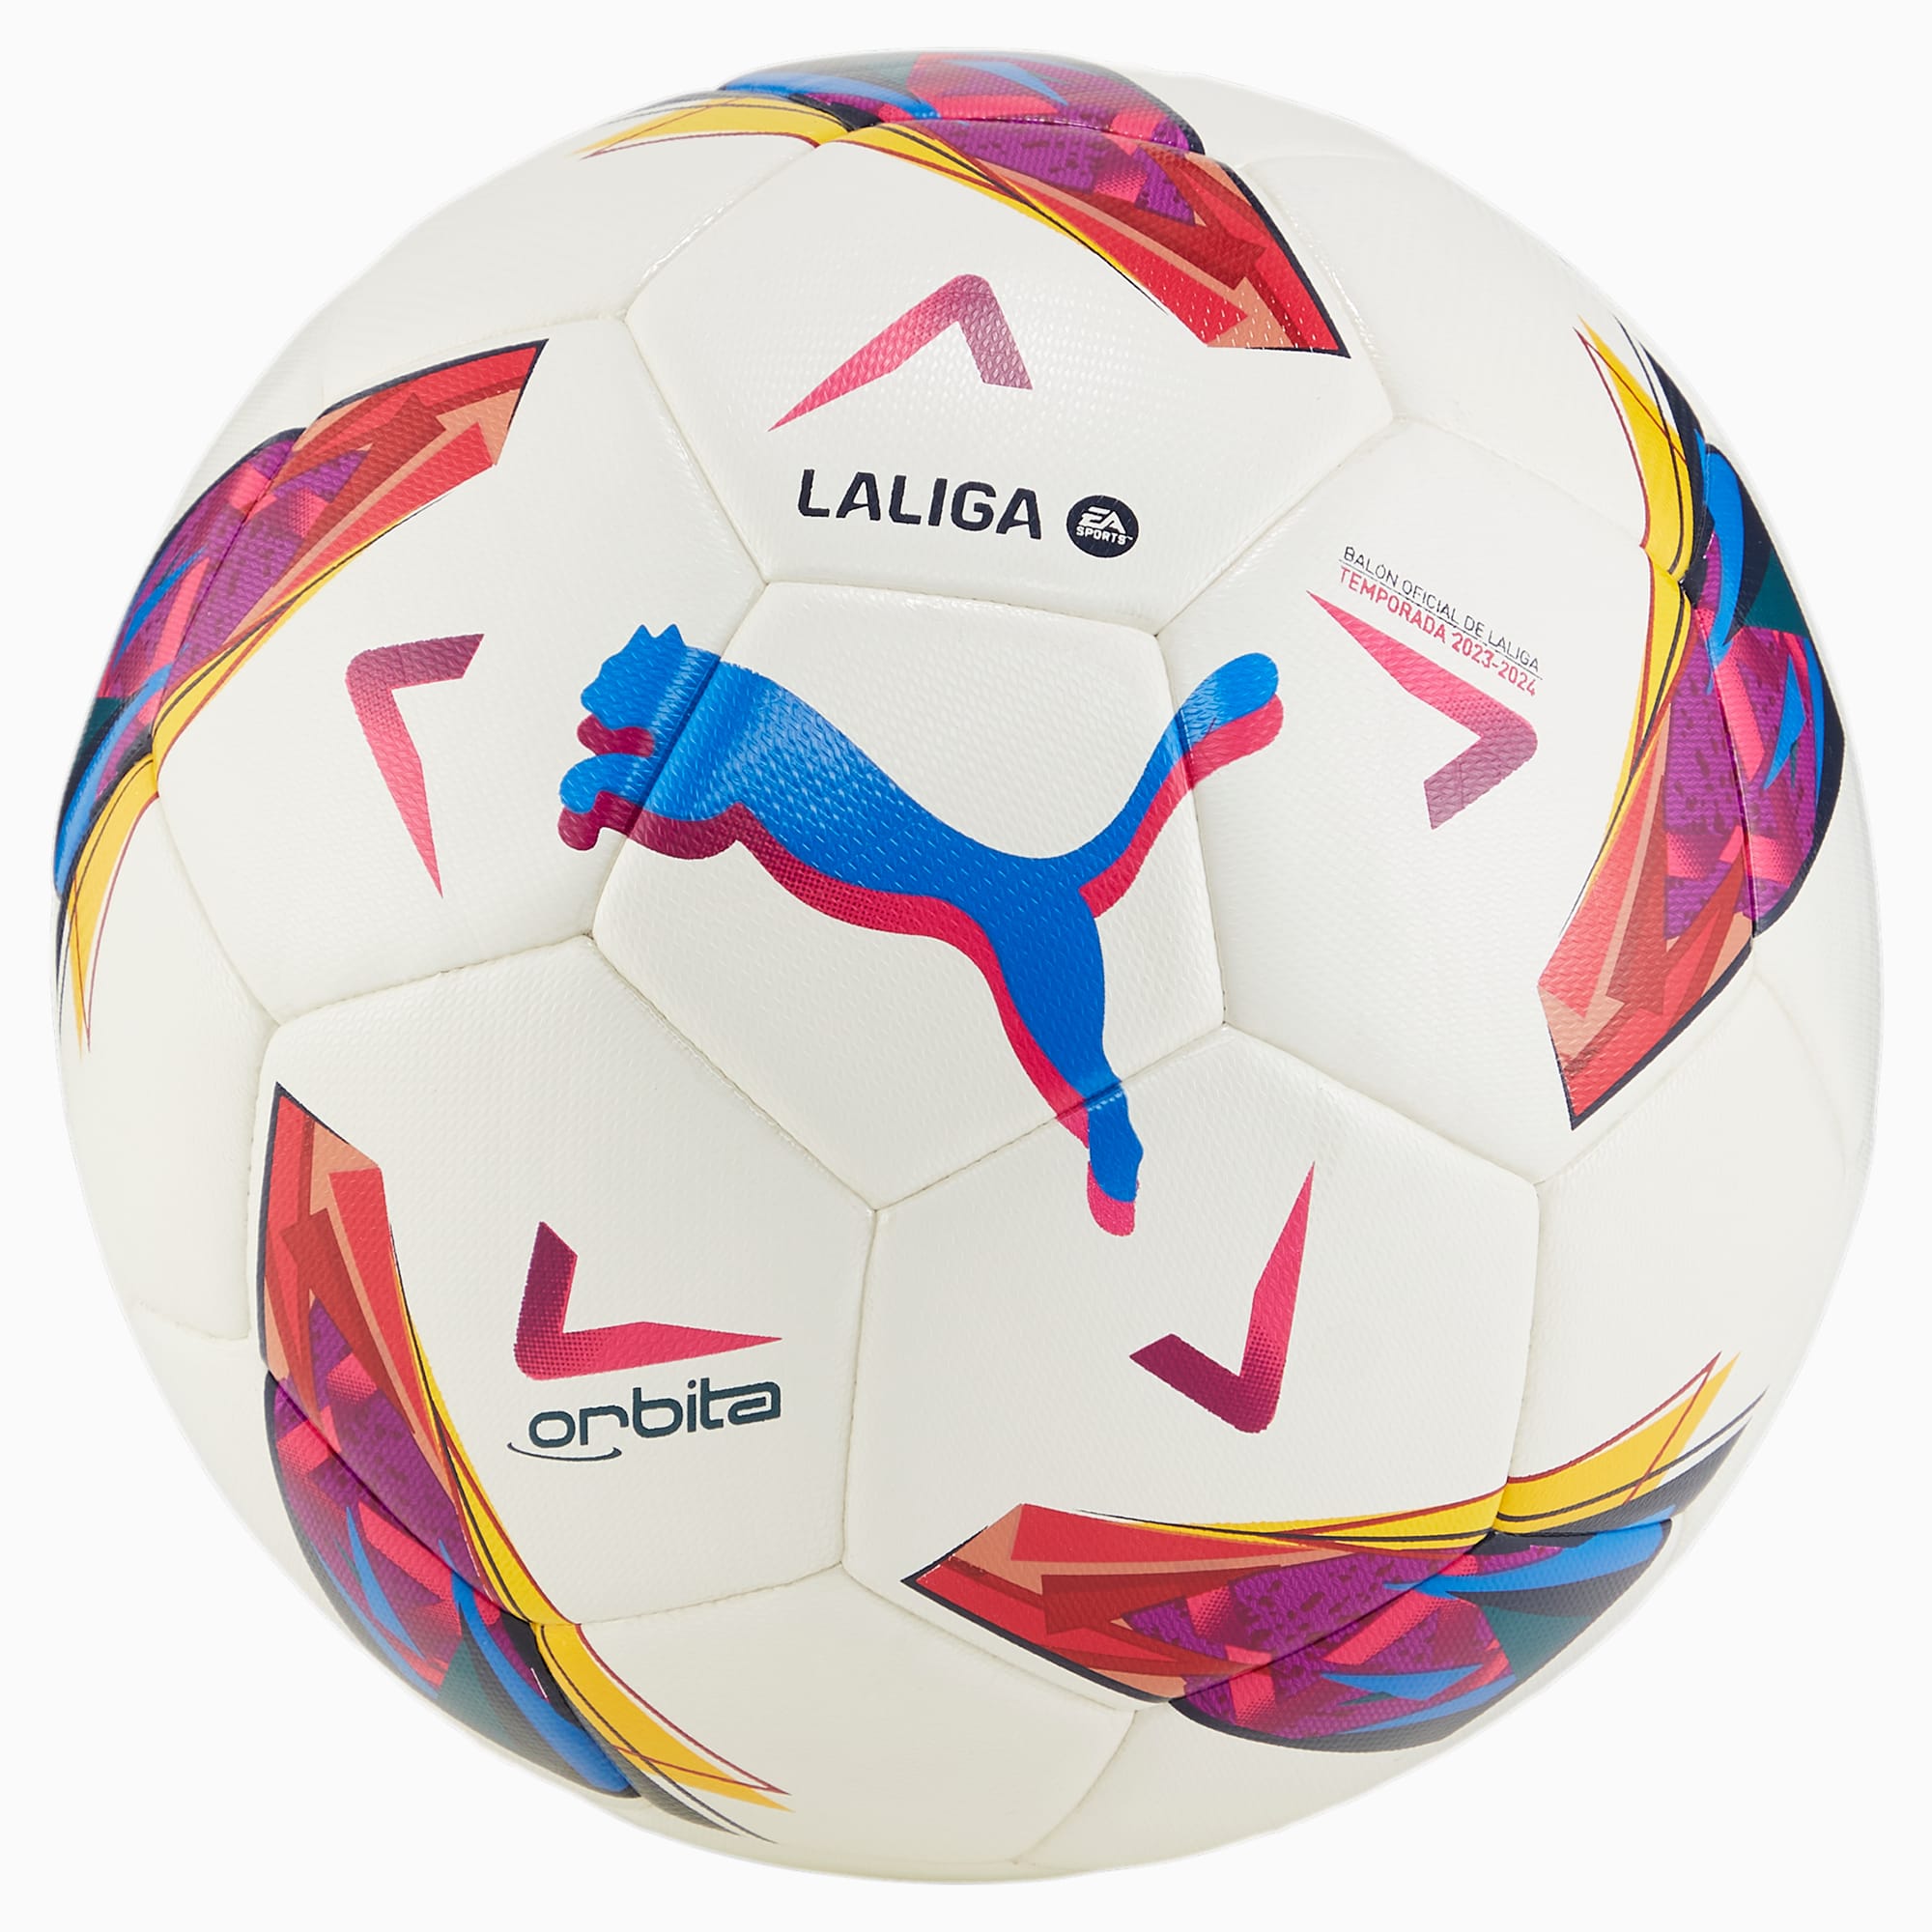 PUMA Orbita LaLiga Hybrid Trainingsfußball Für Damen, Weiß, Größe: 4, Accessoires